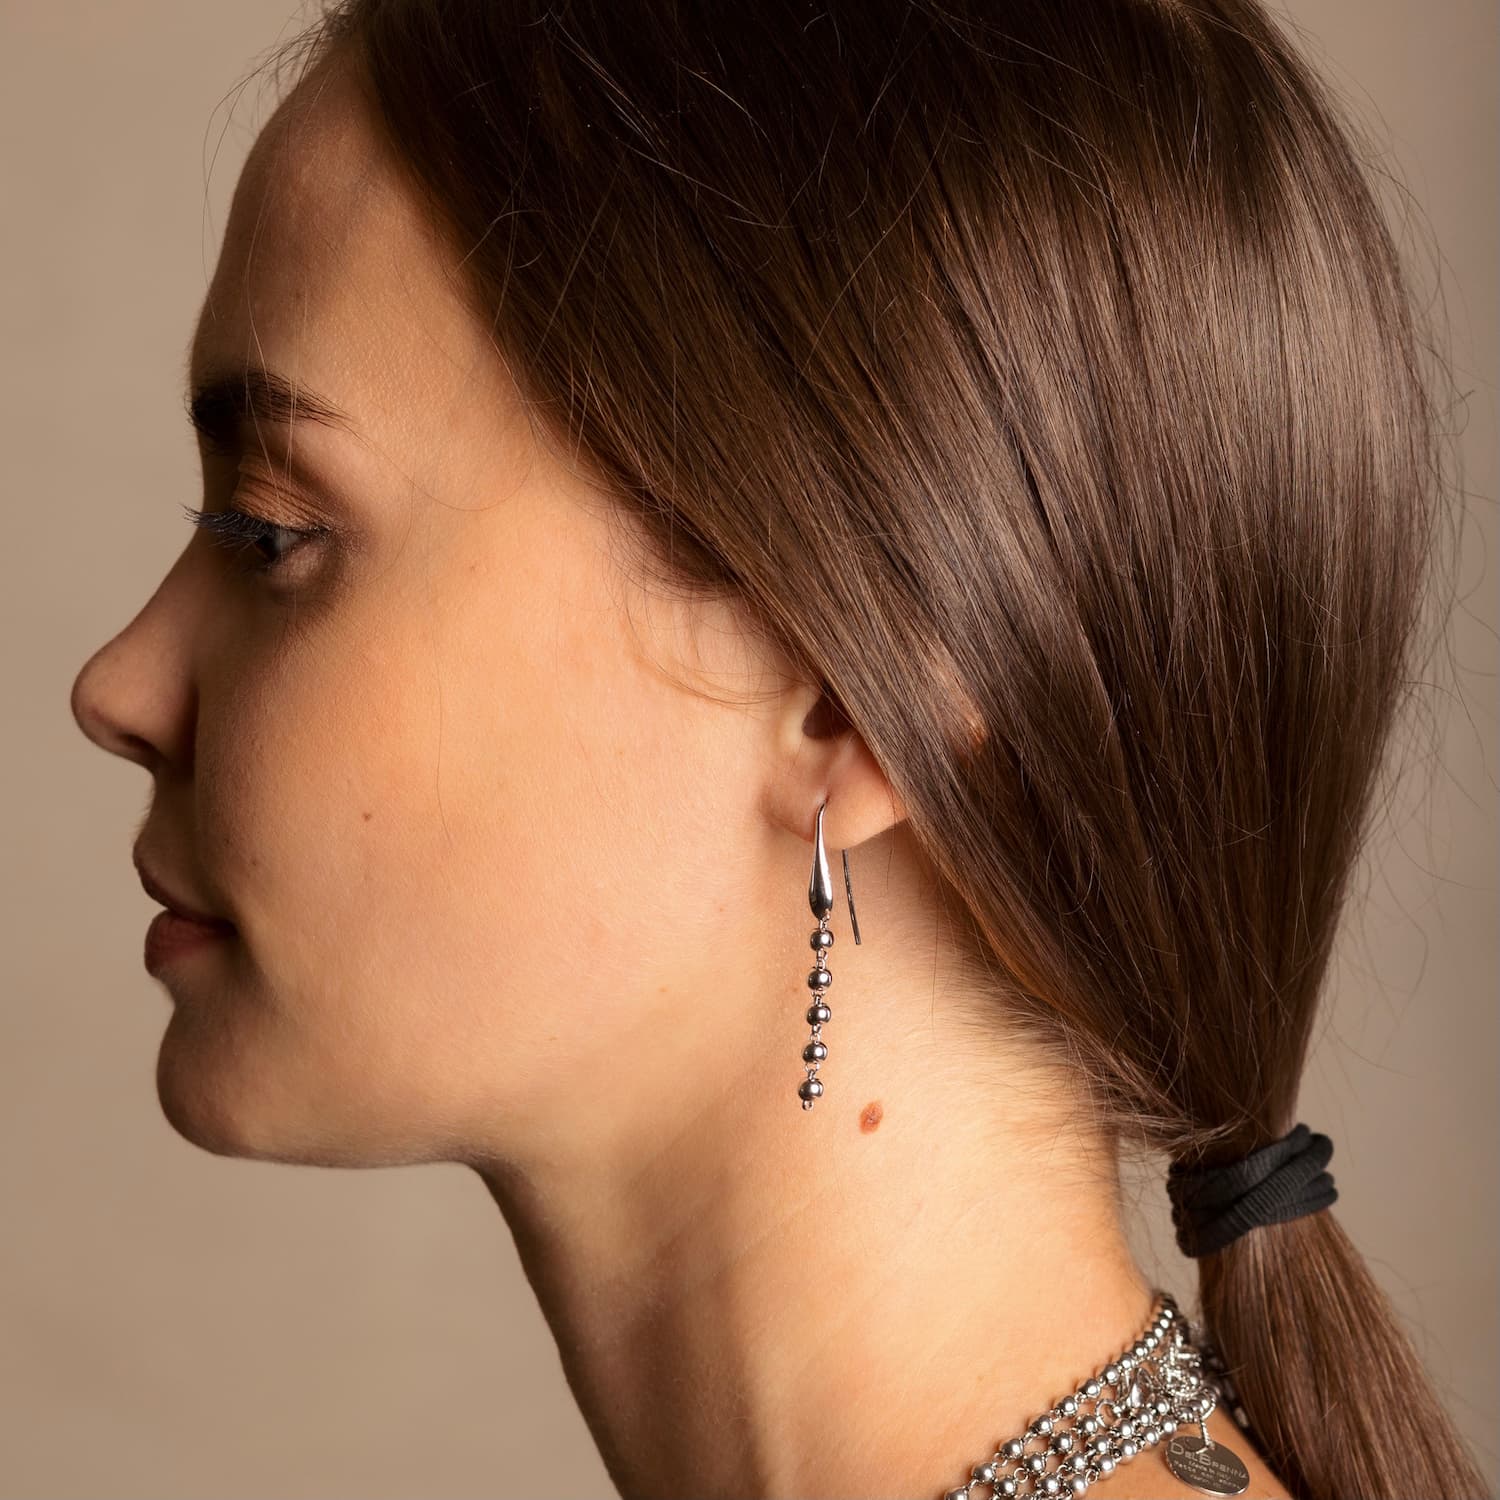 Beads 3mm Earrings in Silver, Long